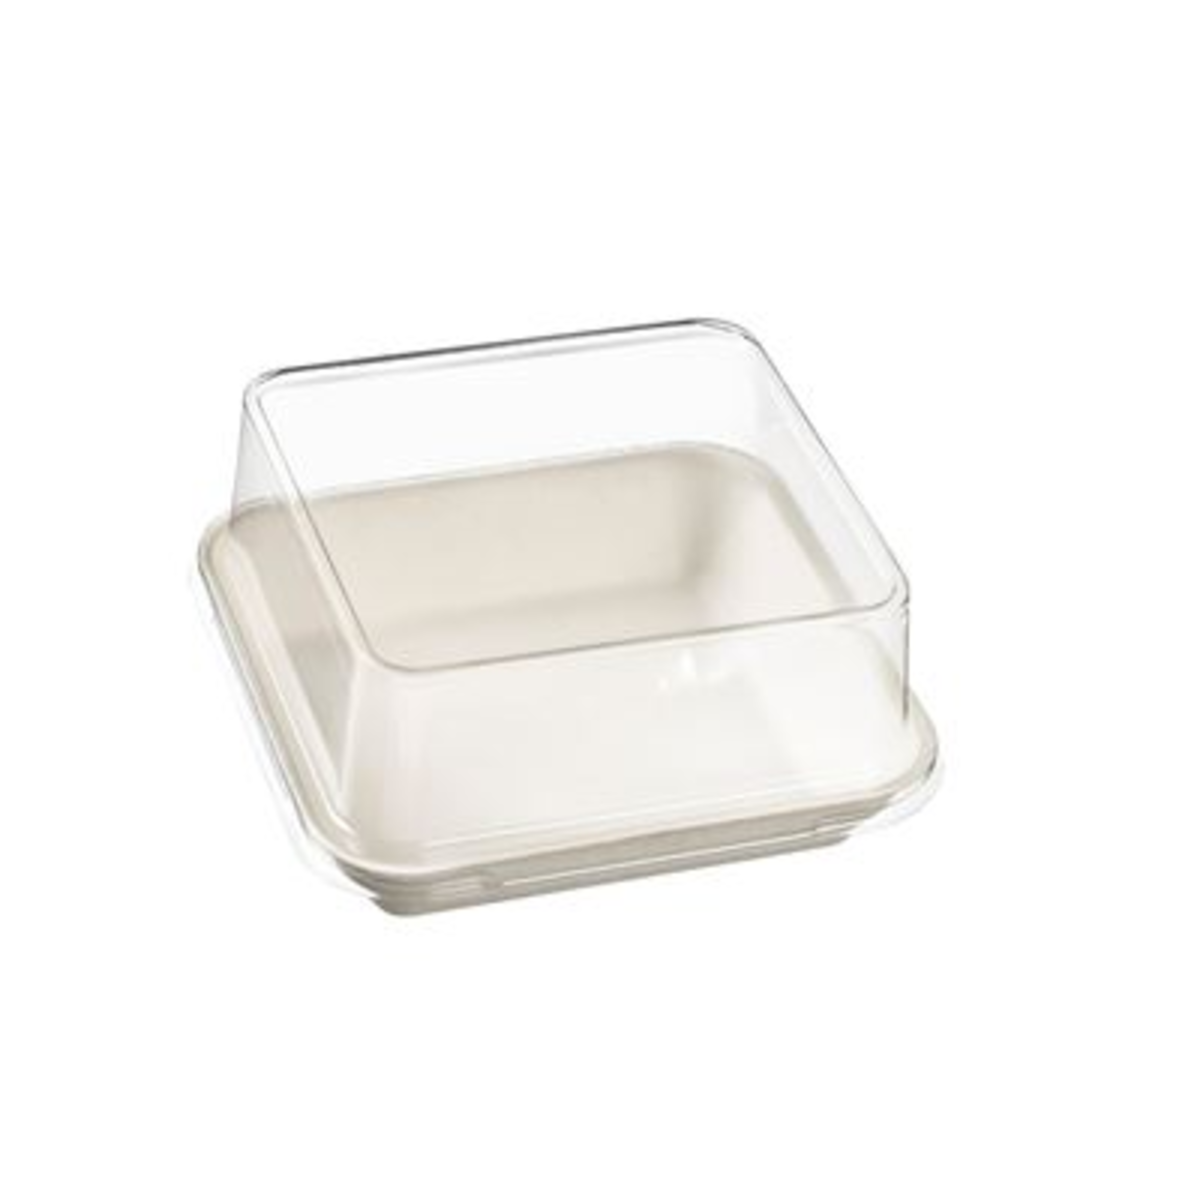 Assiette jetable carrée Kanopée pulpe de canne blanc 2 x 10 x 10 cm x 200 Solia - VF40161